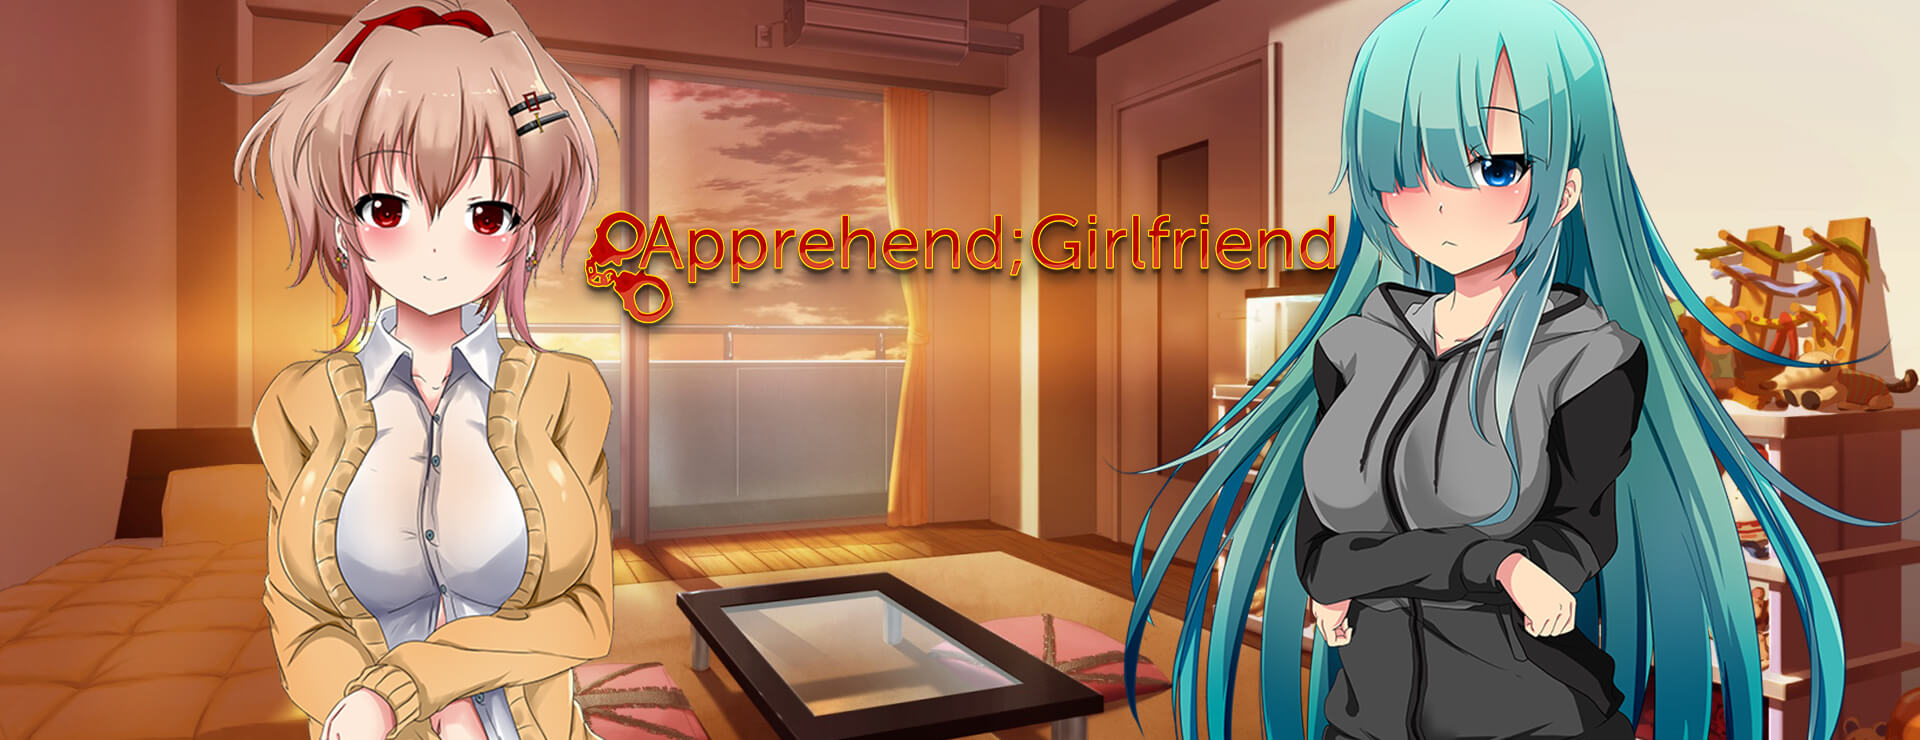 Apprehend; Girlfriend - アクションアドベンチャー ゲーム